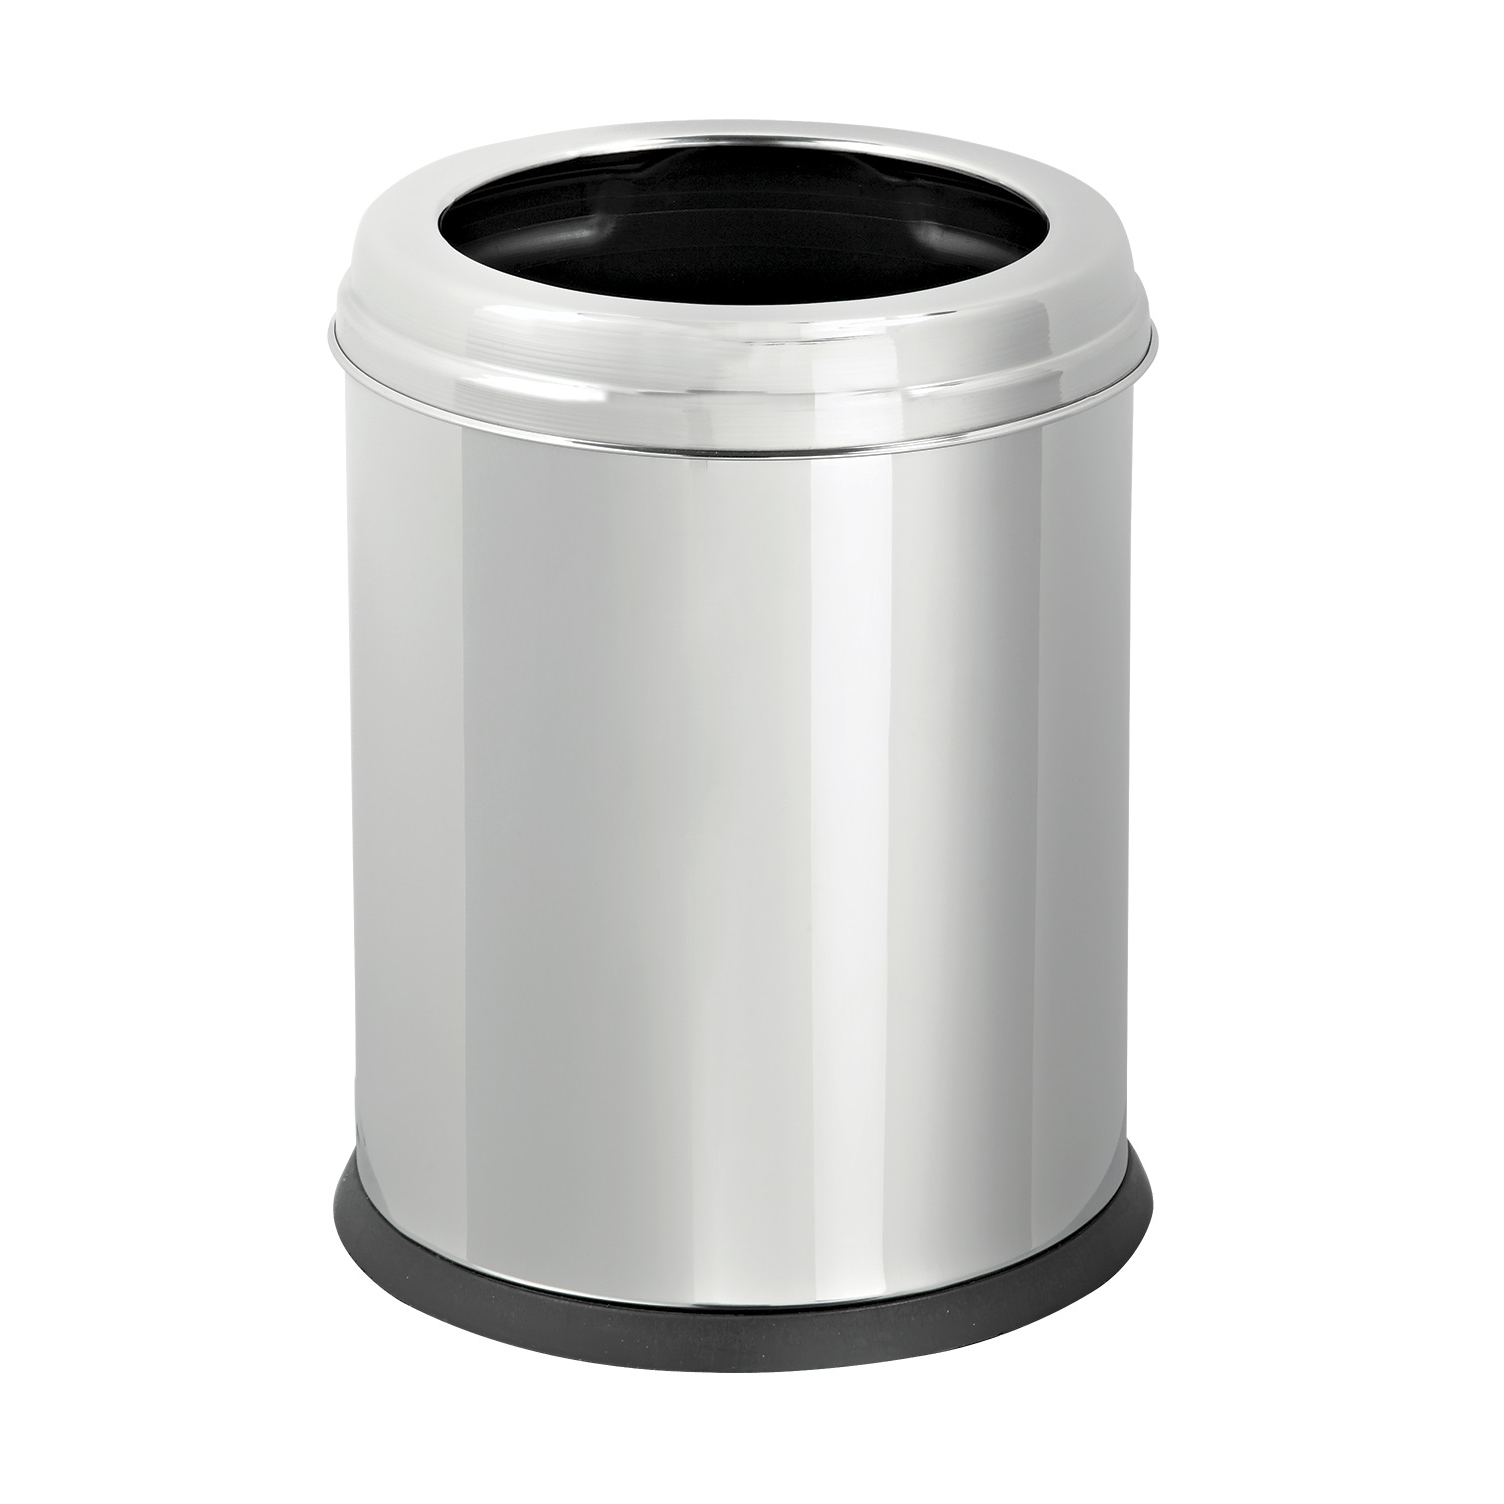 Урна для мусора Primanova Eco серебряная с чёрным 20,5х34,5 см, цвет серебряный - фото 1